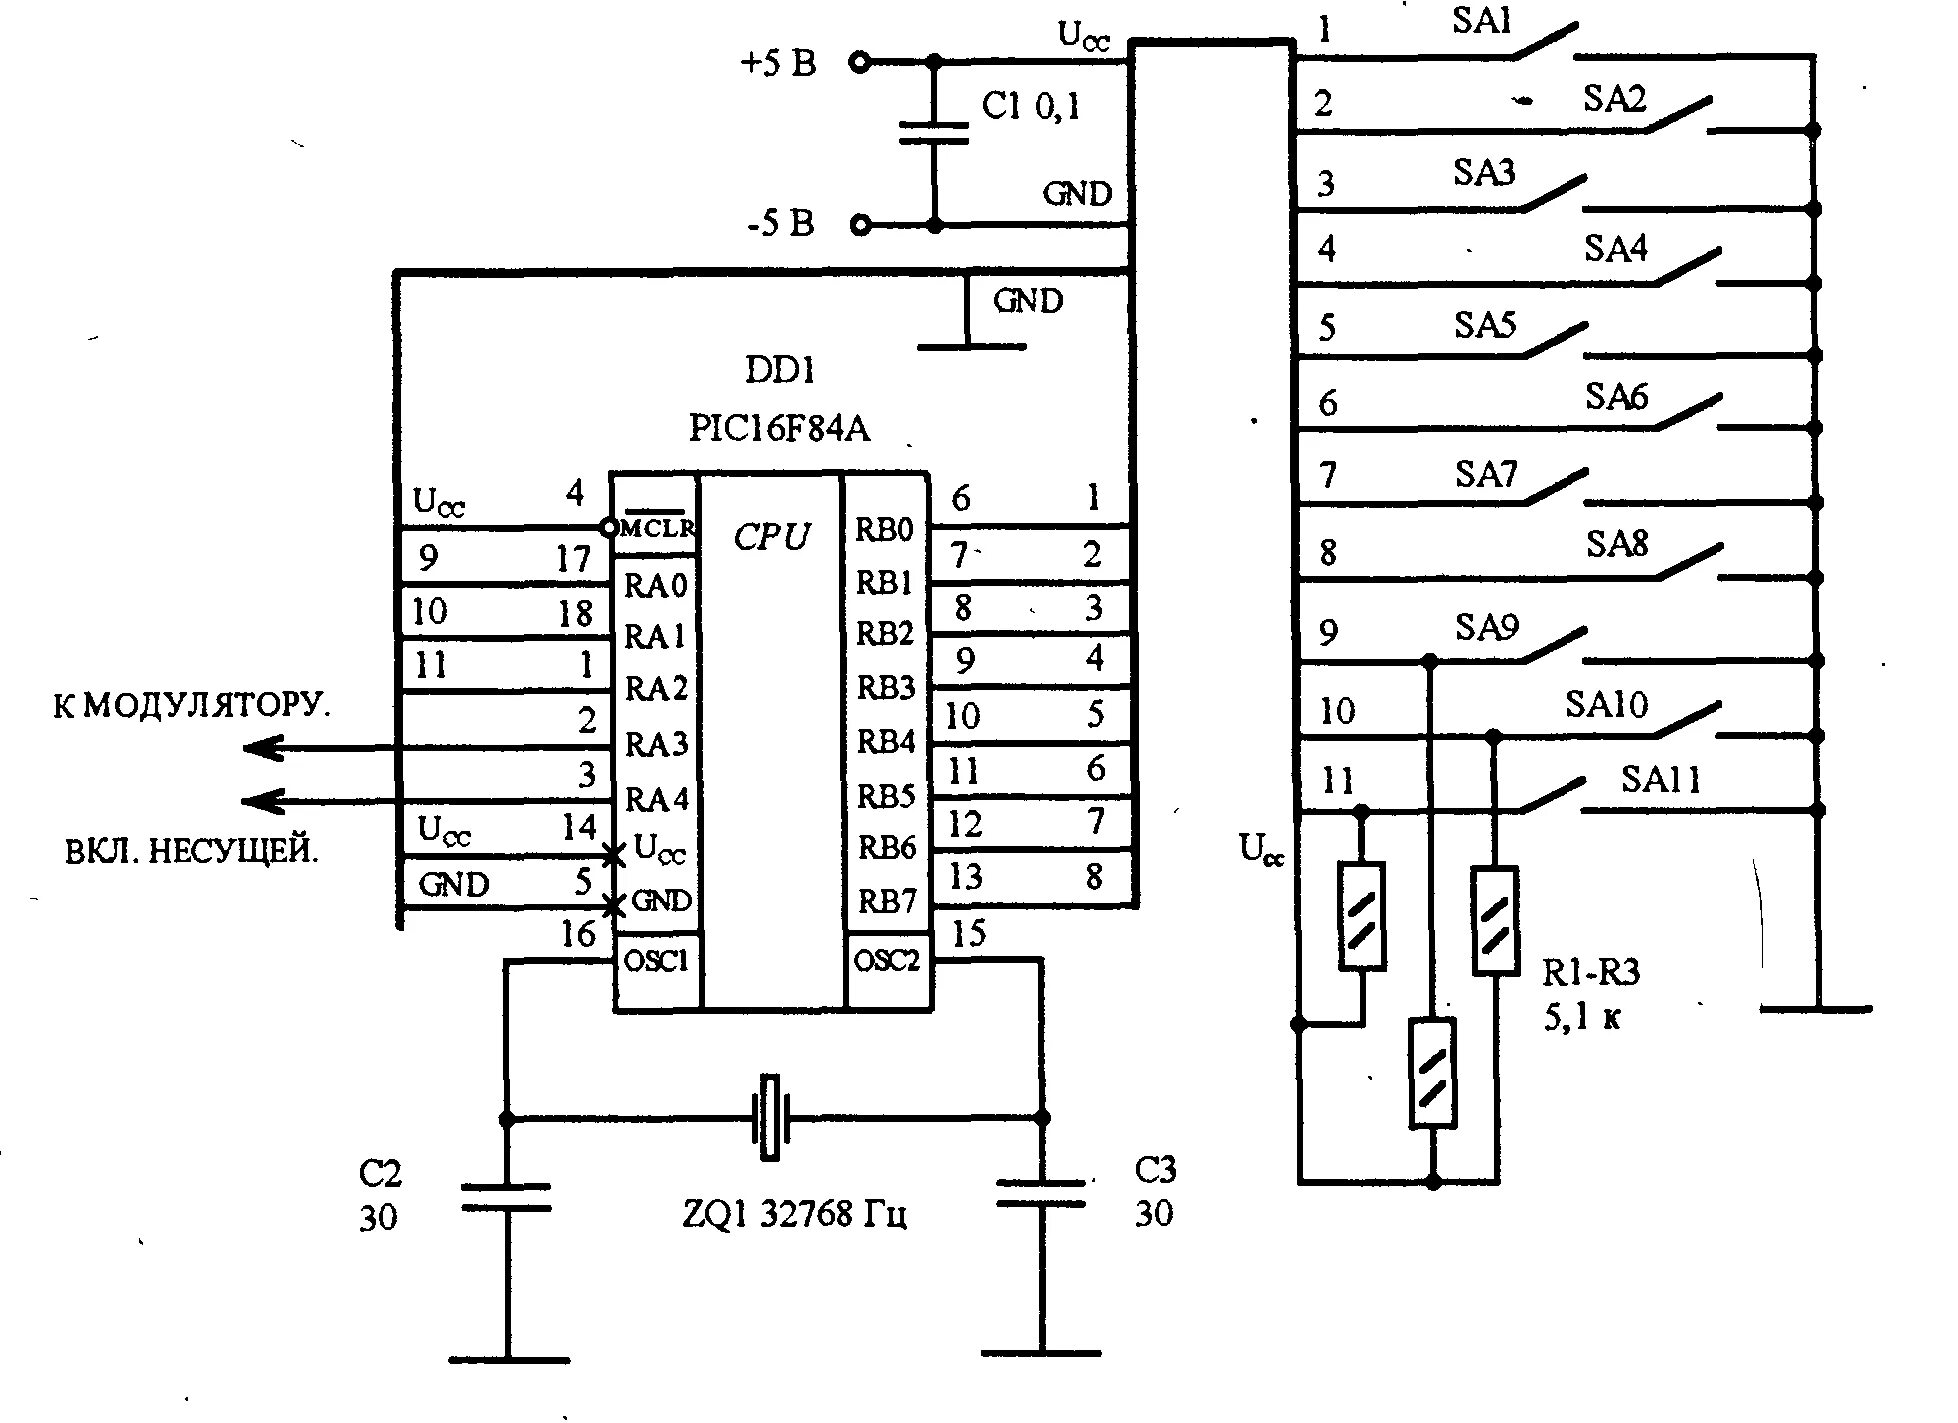 Принципиальная электрическая схема микропроцессора. Схема сигнализации на микроконтроллере. Принципиальная схема микропроцессорной системы. Микропроцессорная система сигнализации схема.